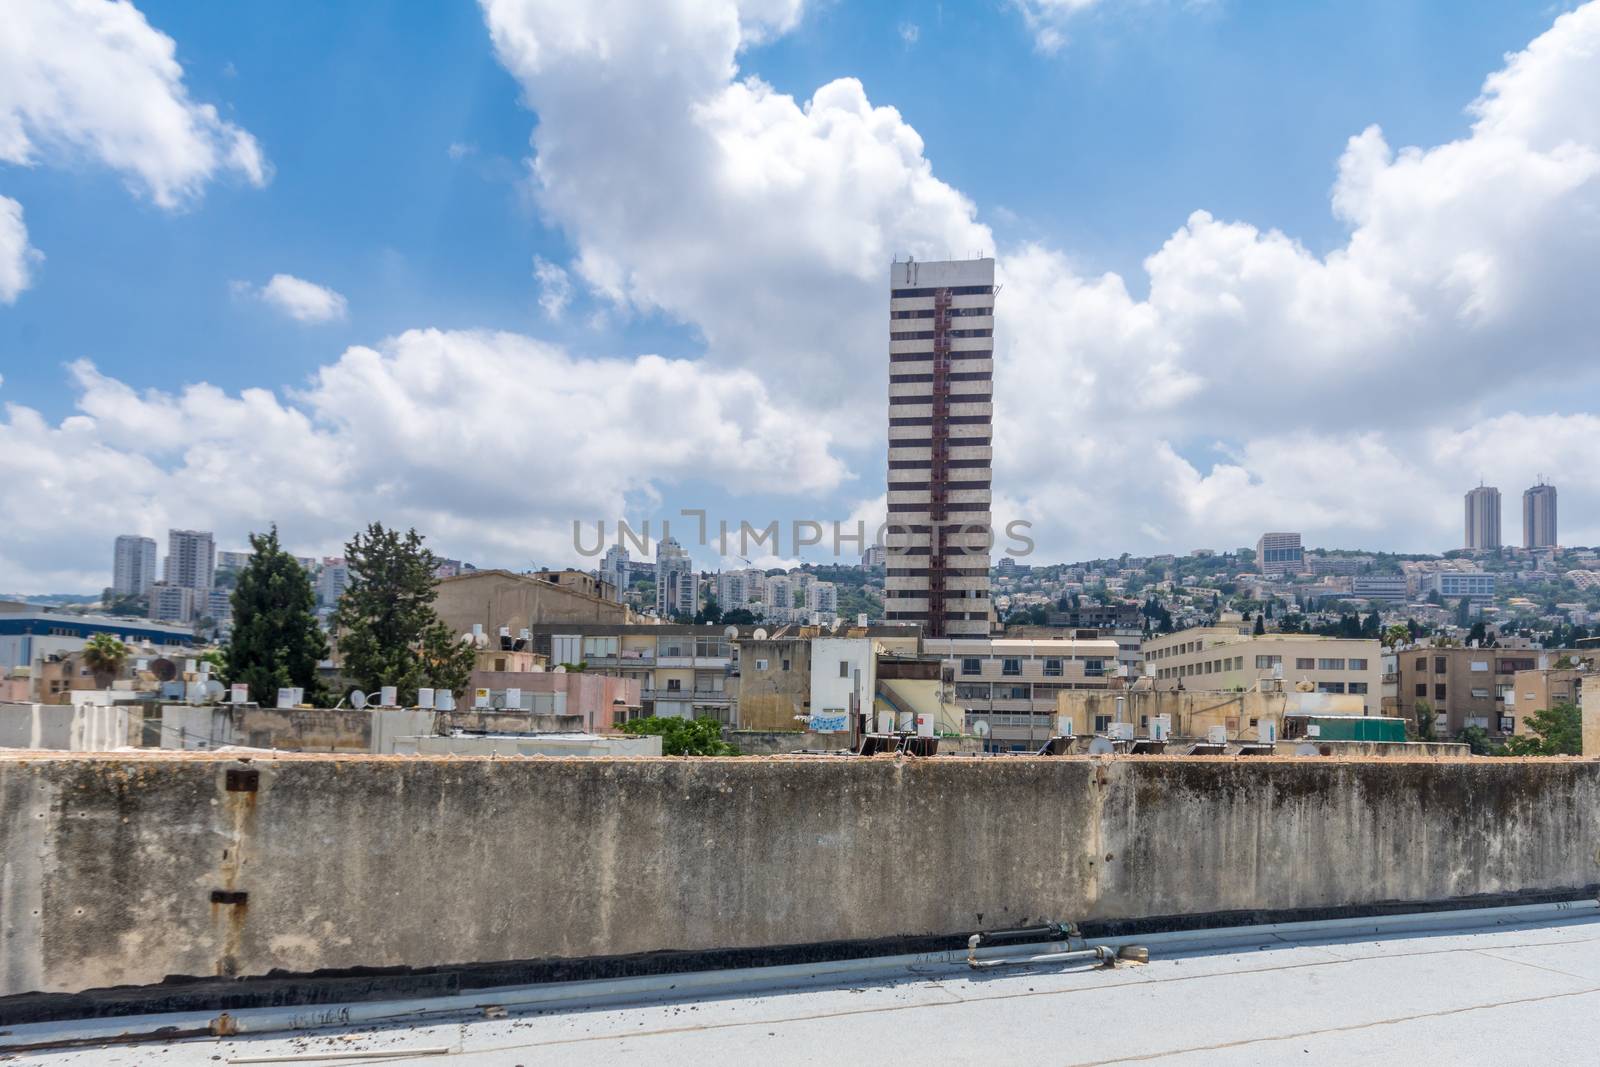 HAIFA, ISRAEL - JULY 20, 2018: View of Haifa and the Carmel mountain from Hadar HaCarmel neighborhood, Haifa, Israel